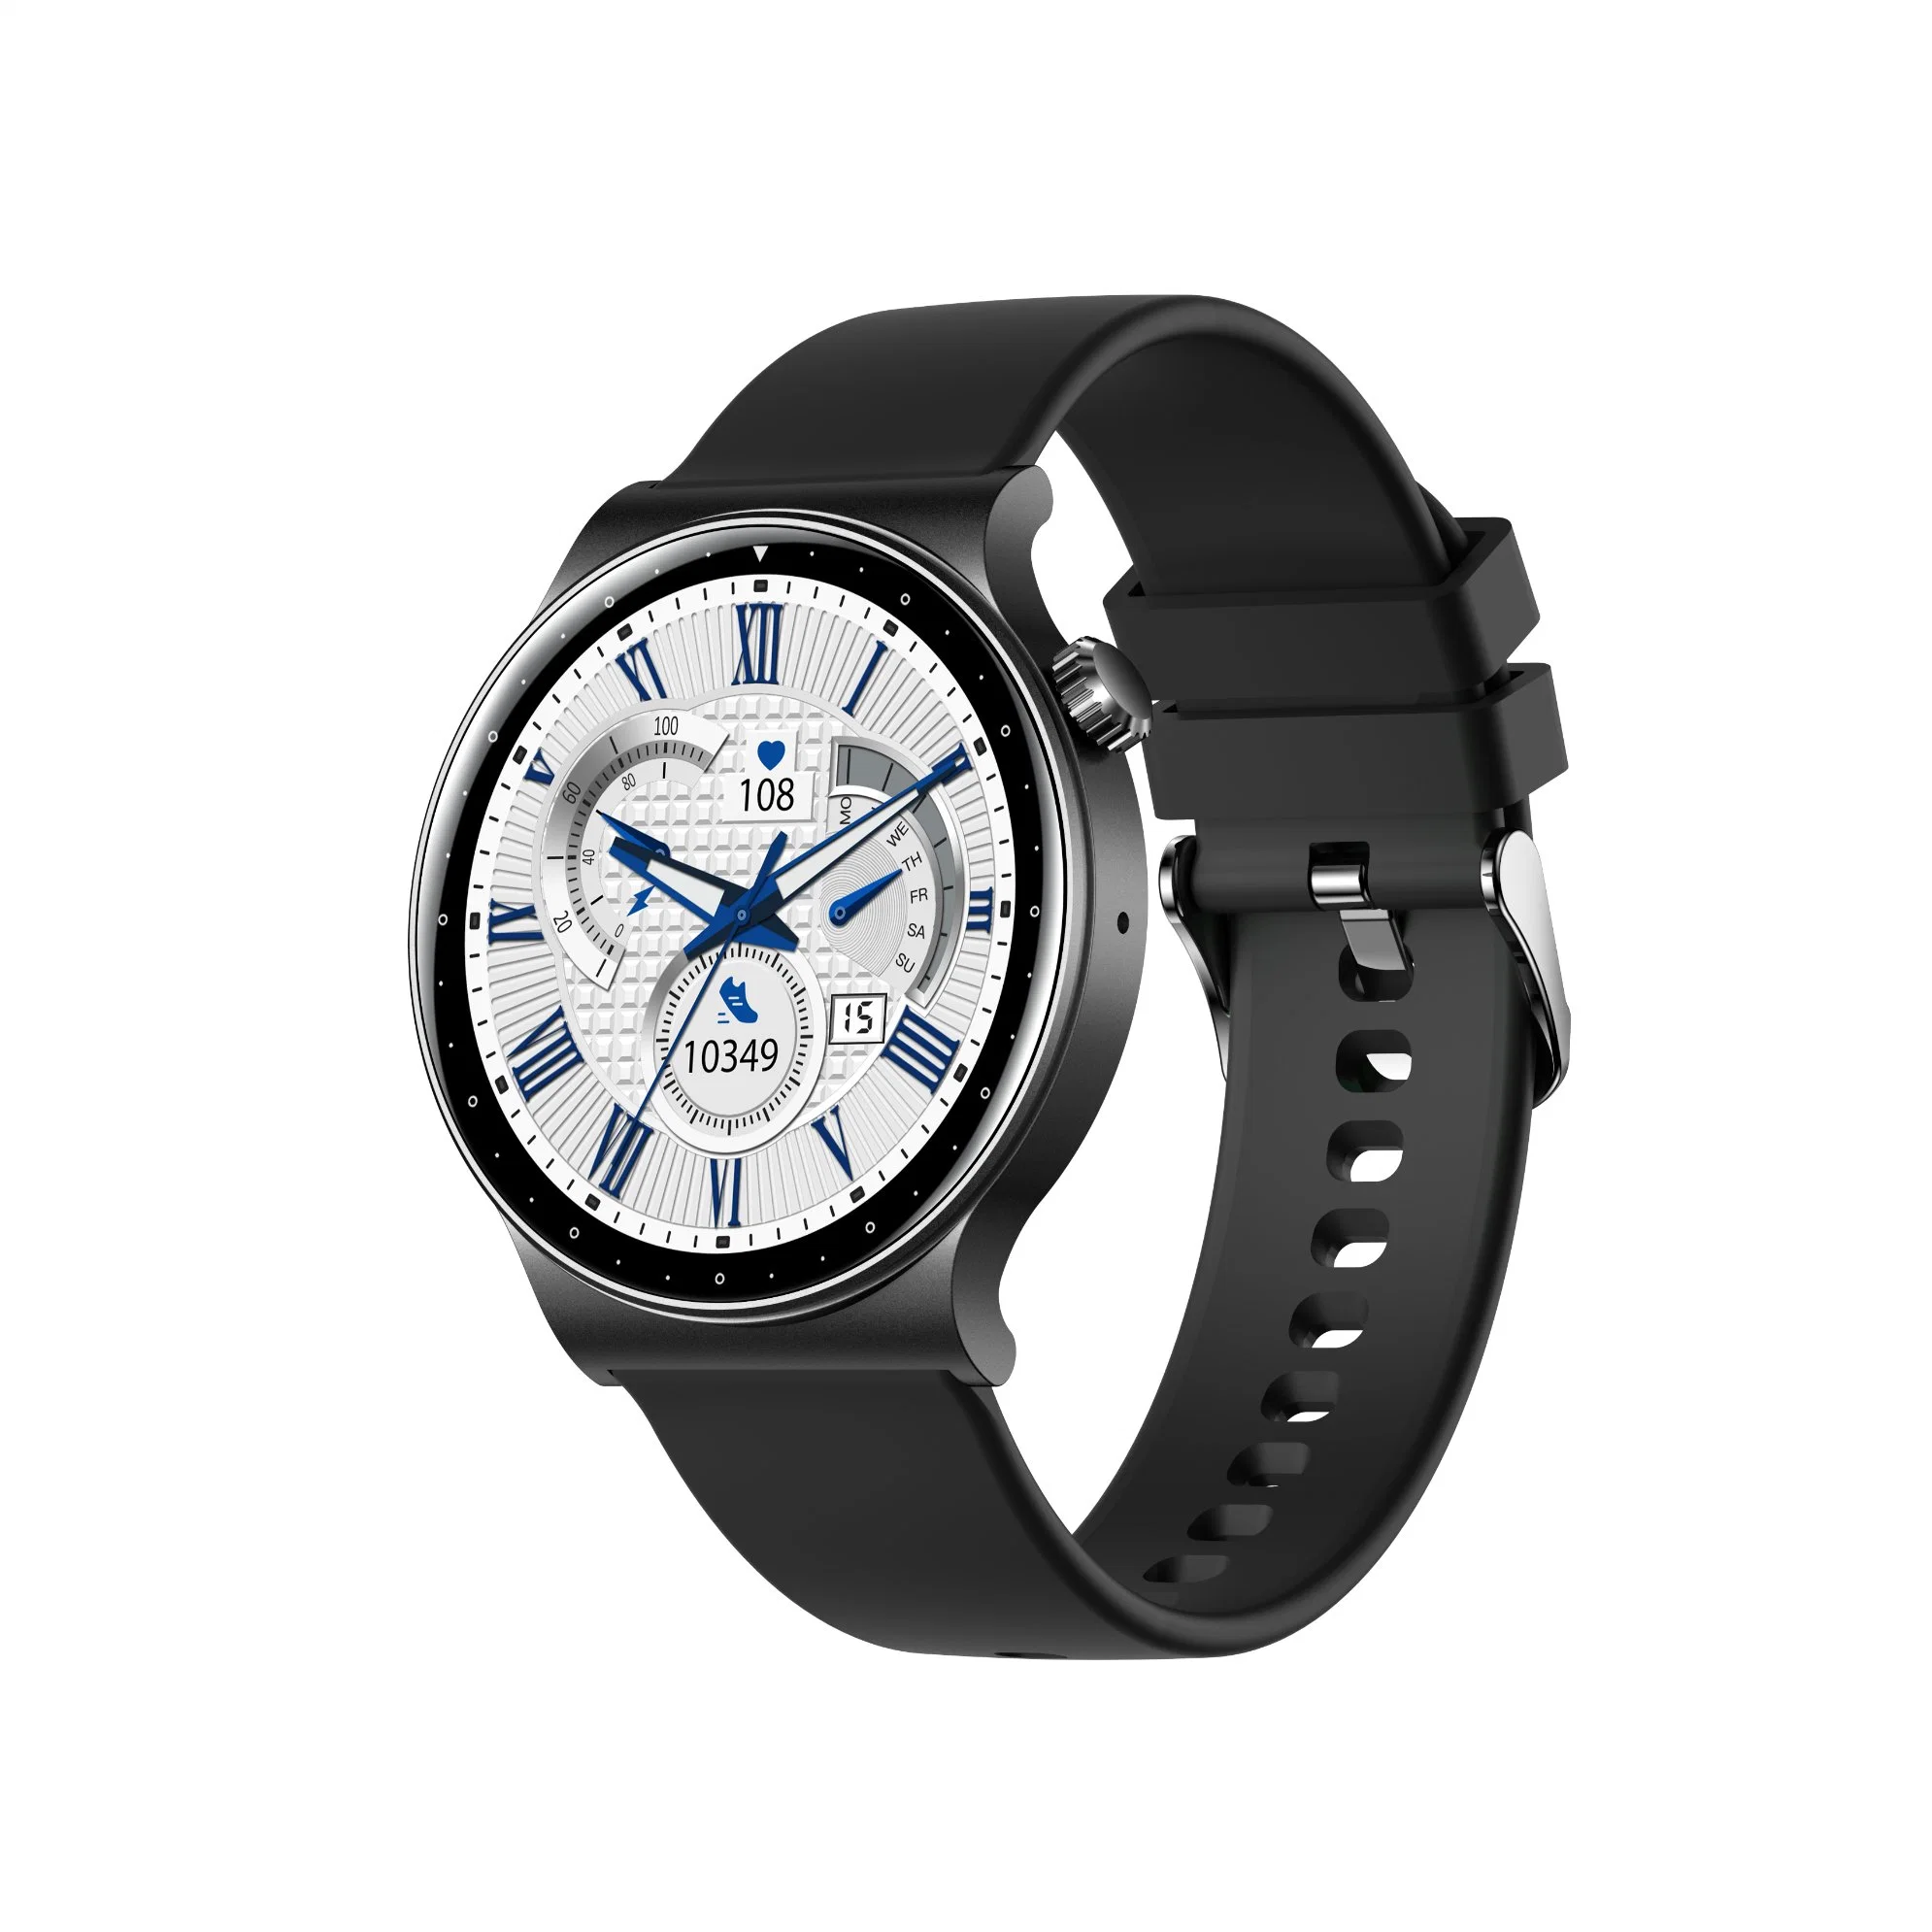 Nouvelle montre intelligente Kr08 avec appel Bluetooth, fréquence cardiaque, réveil et bracelet intelligent pour le sport.